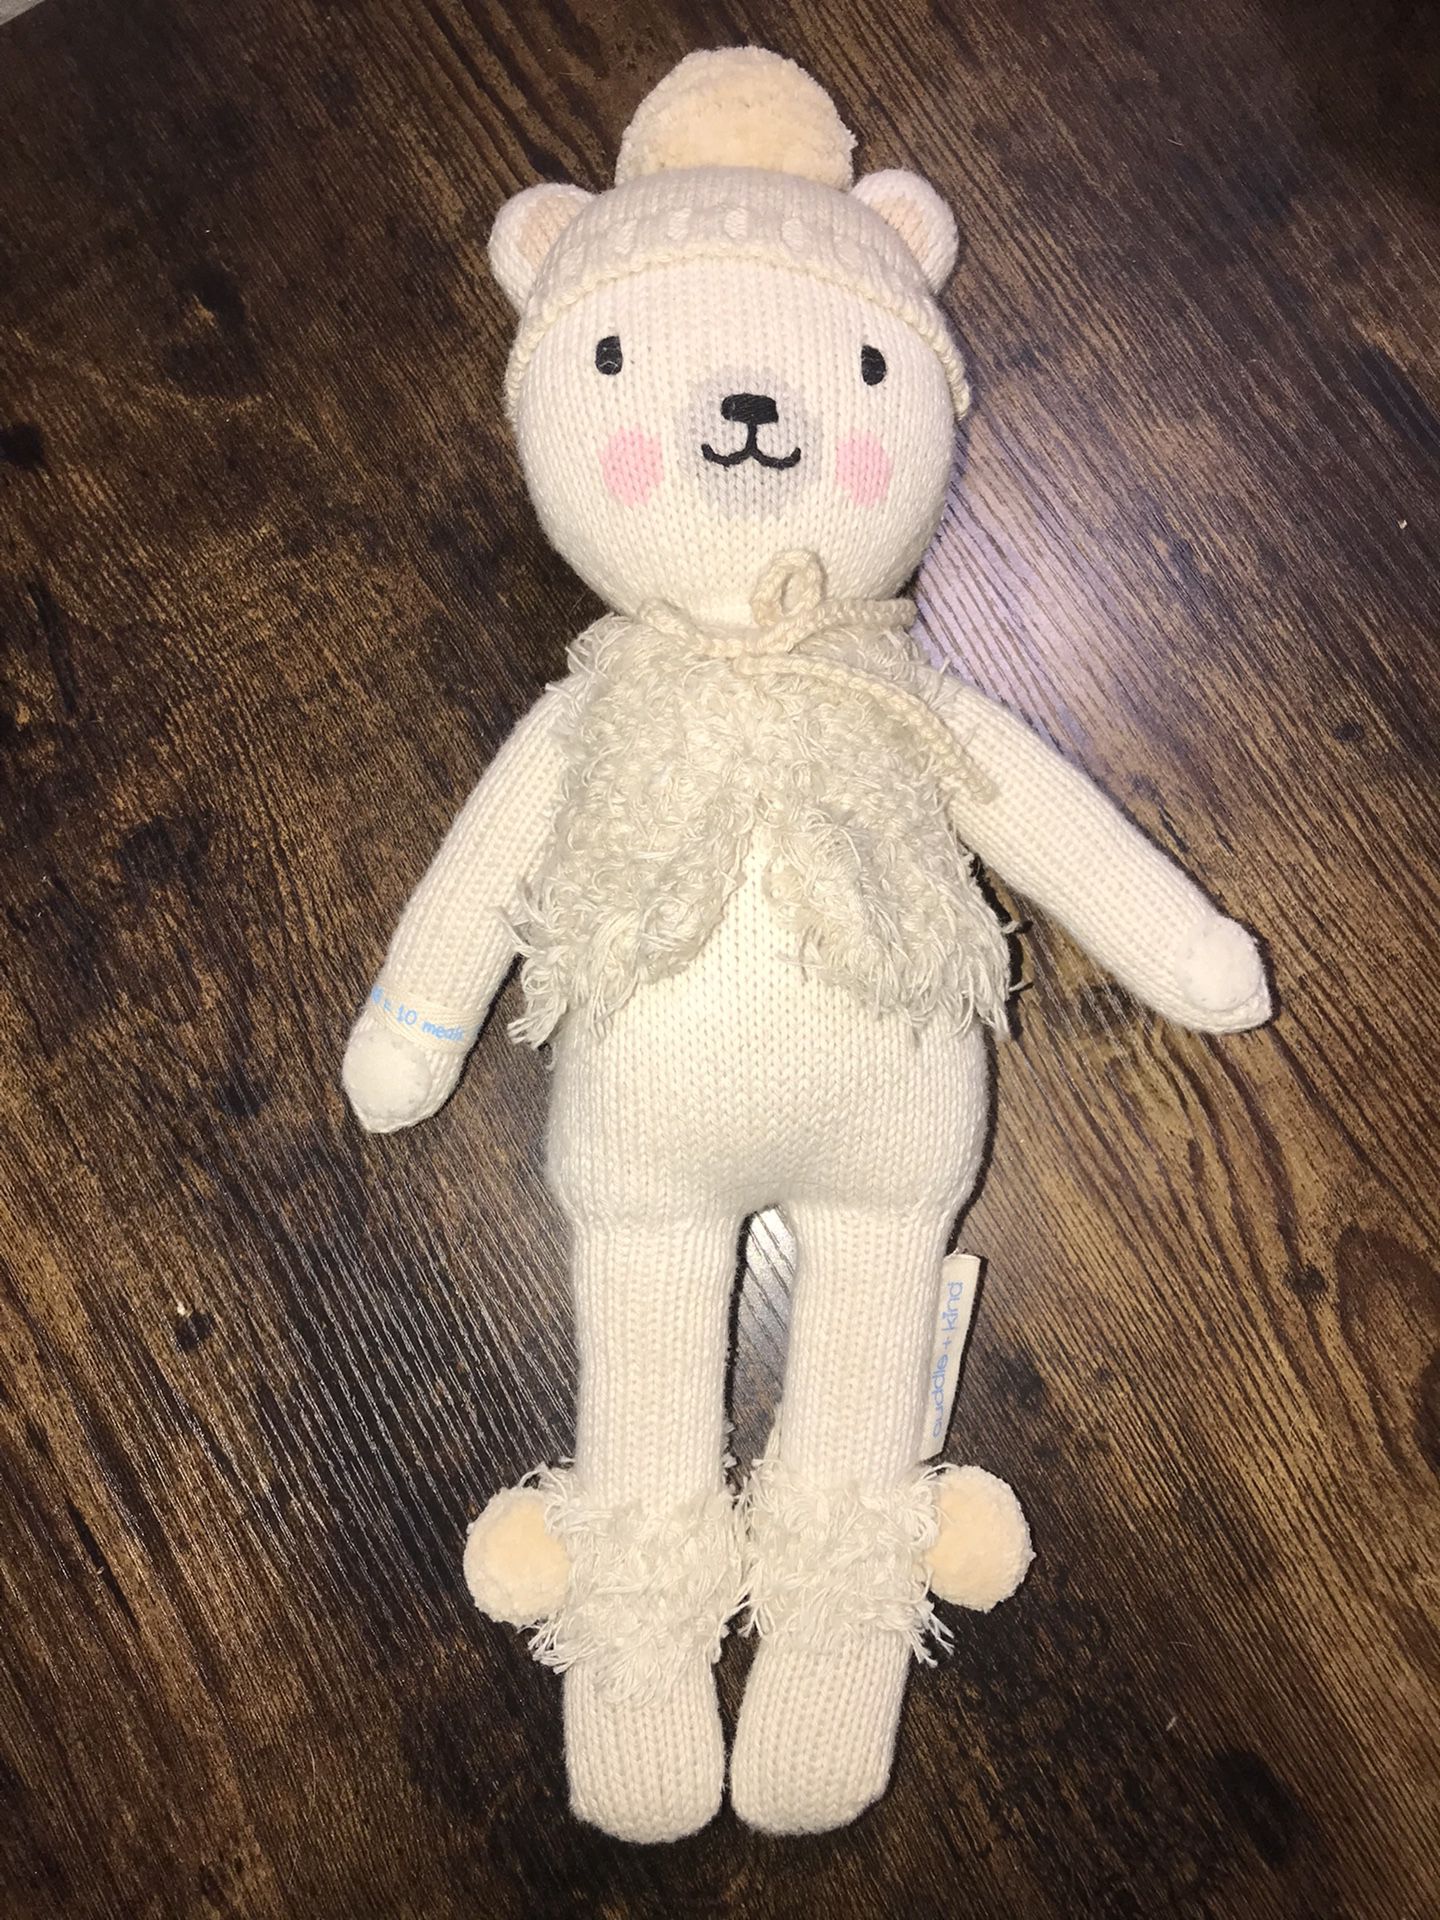 Cuddle + Kind Stella The Polar Bear Knit Doll Baby Plush Toy 15” Inch